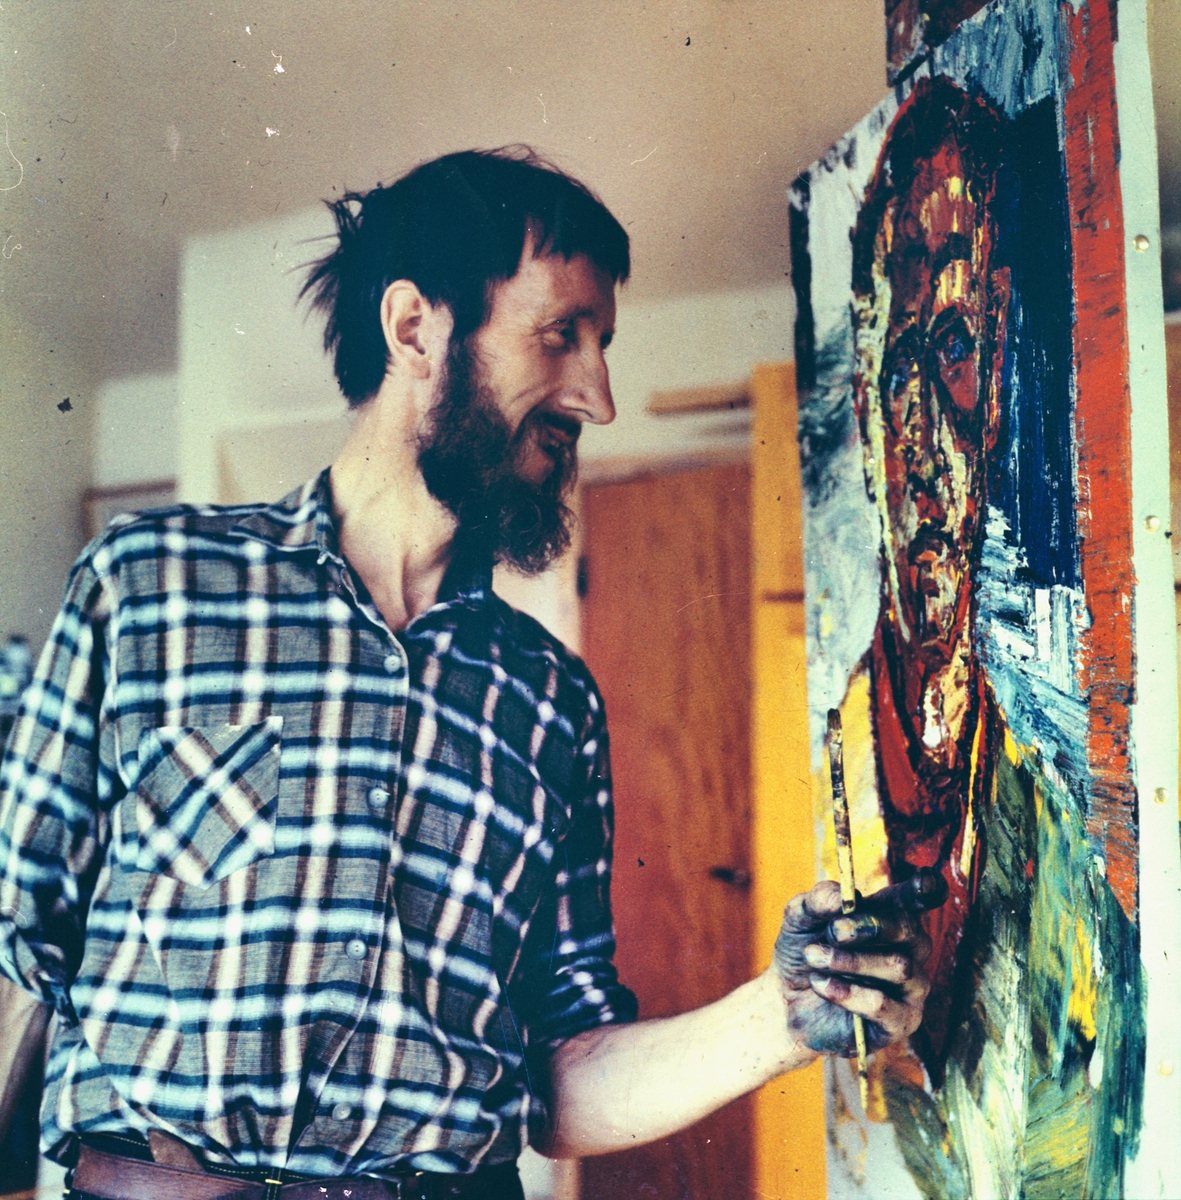 Konstnär Ragnar Johansson i arbete med att avbilda fotograf Gunnar Sundgren i sin ateljé, Härjedalen